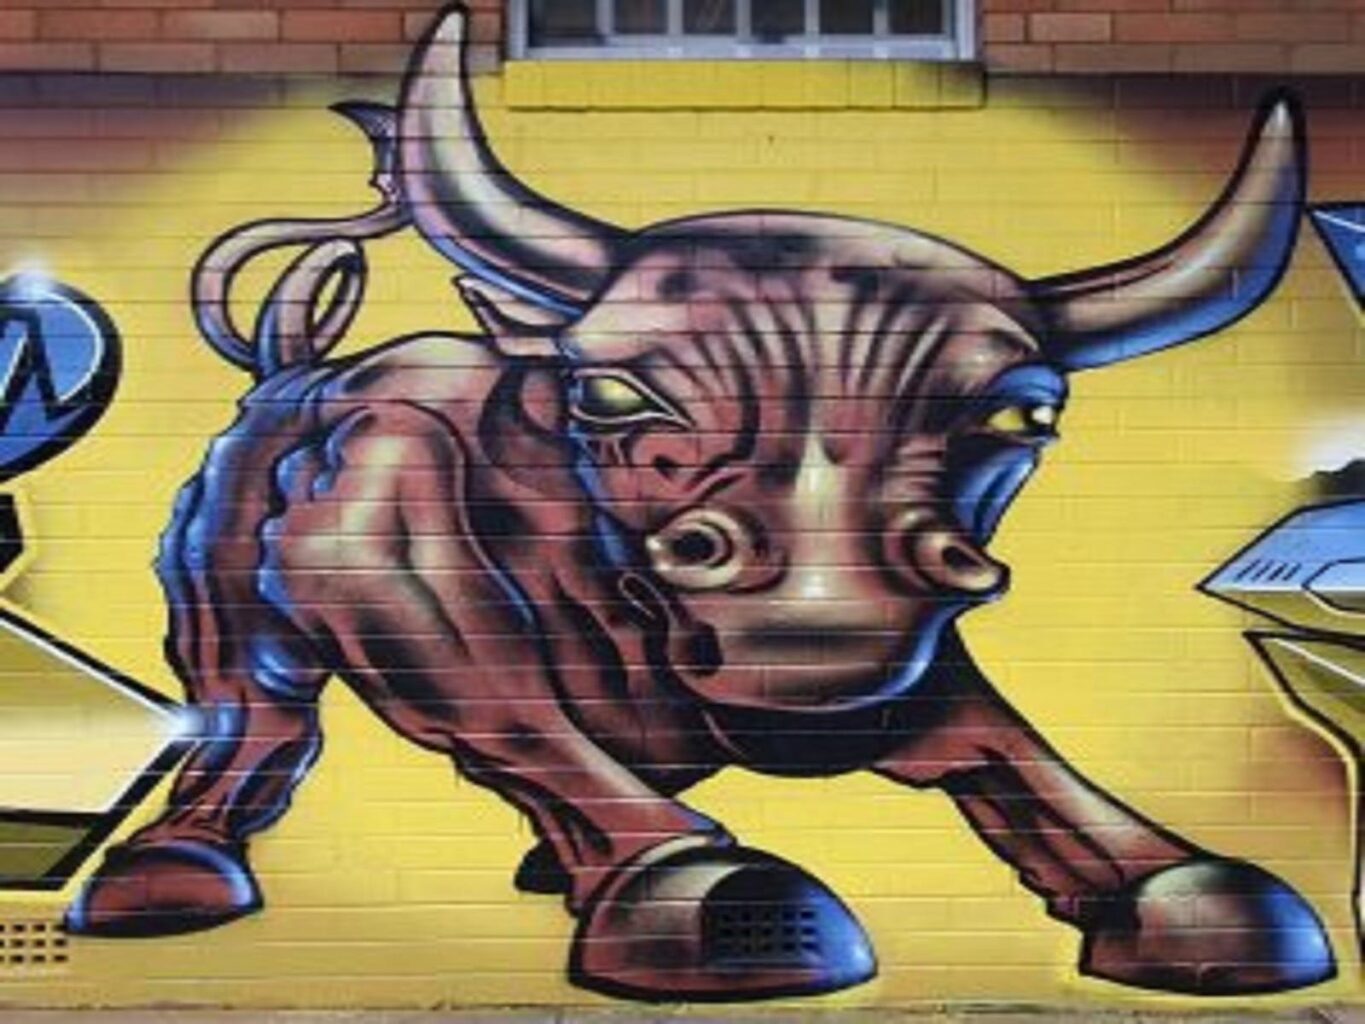 Bull artwork